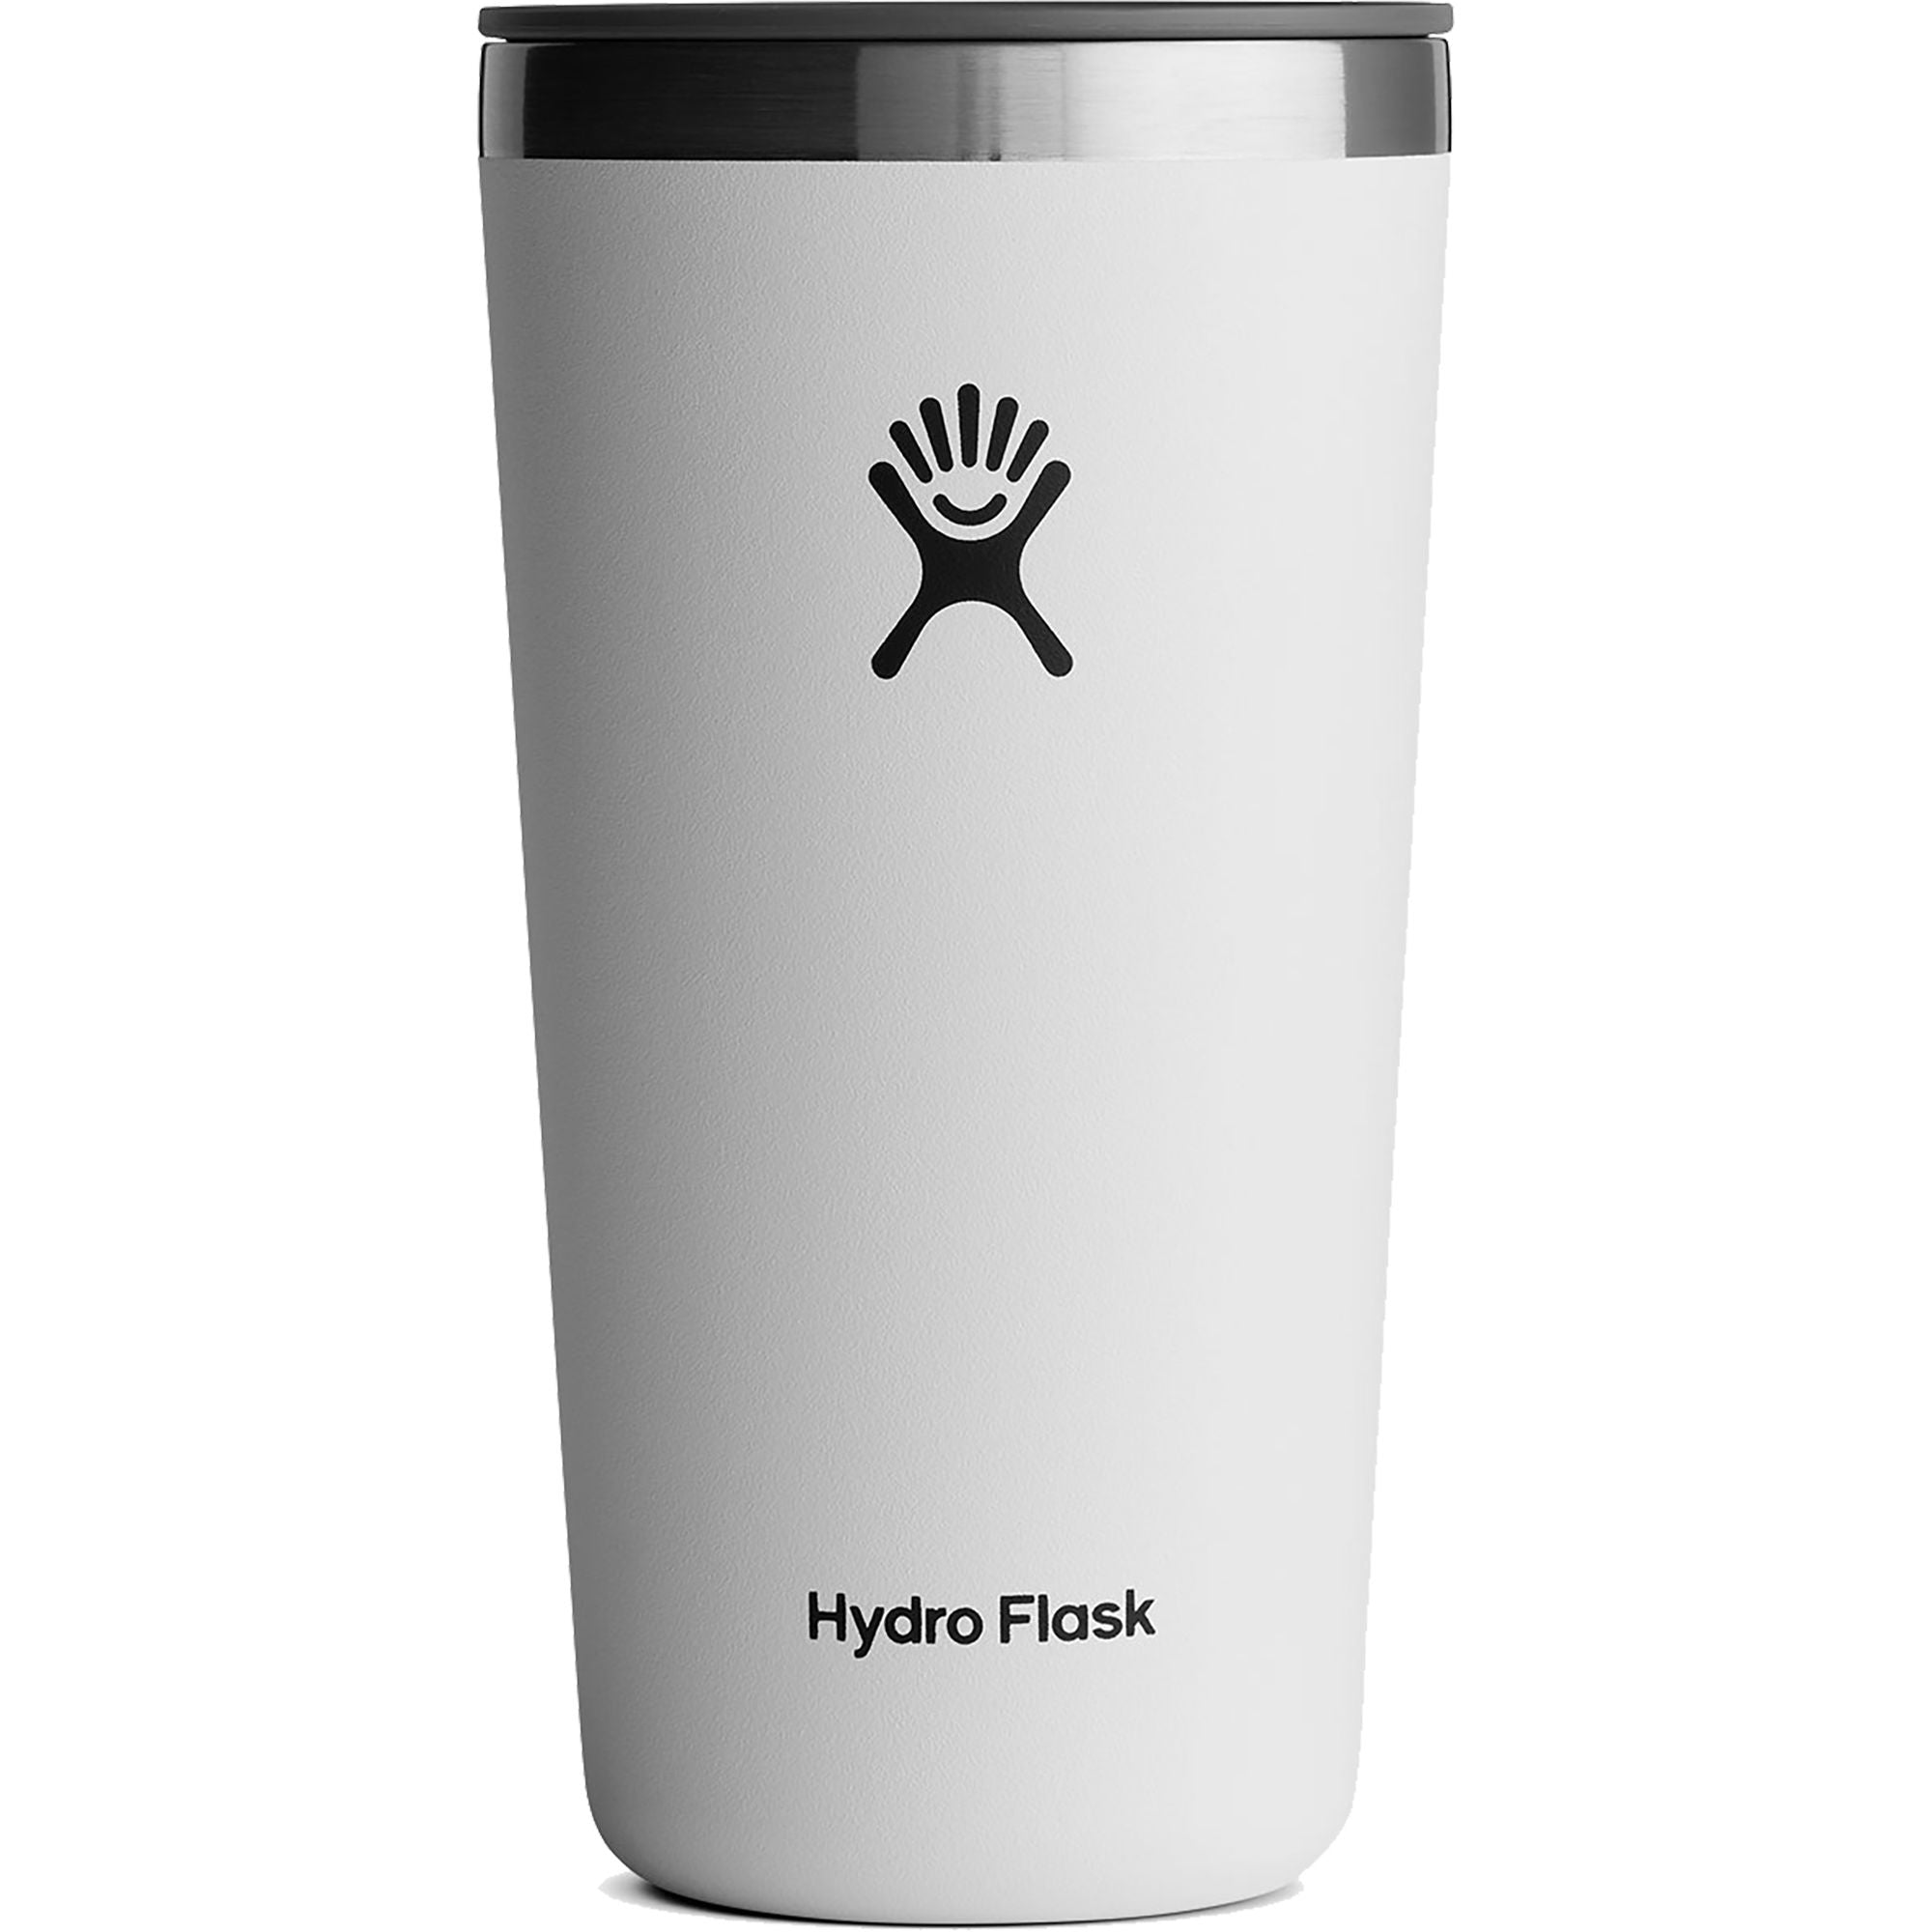 Hydro Flask 20 oz All Around Tumbler White